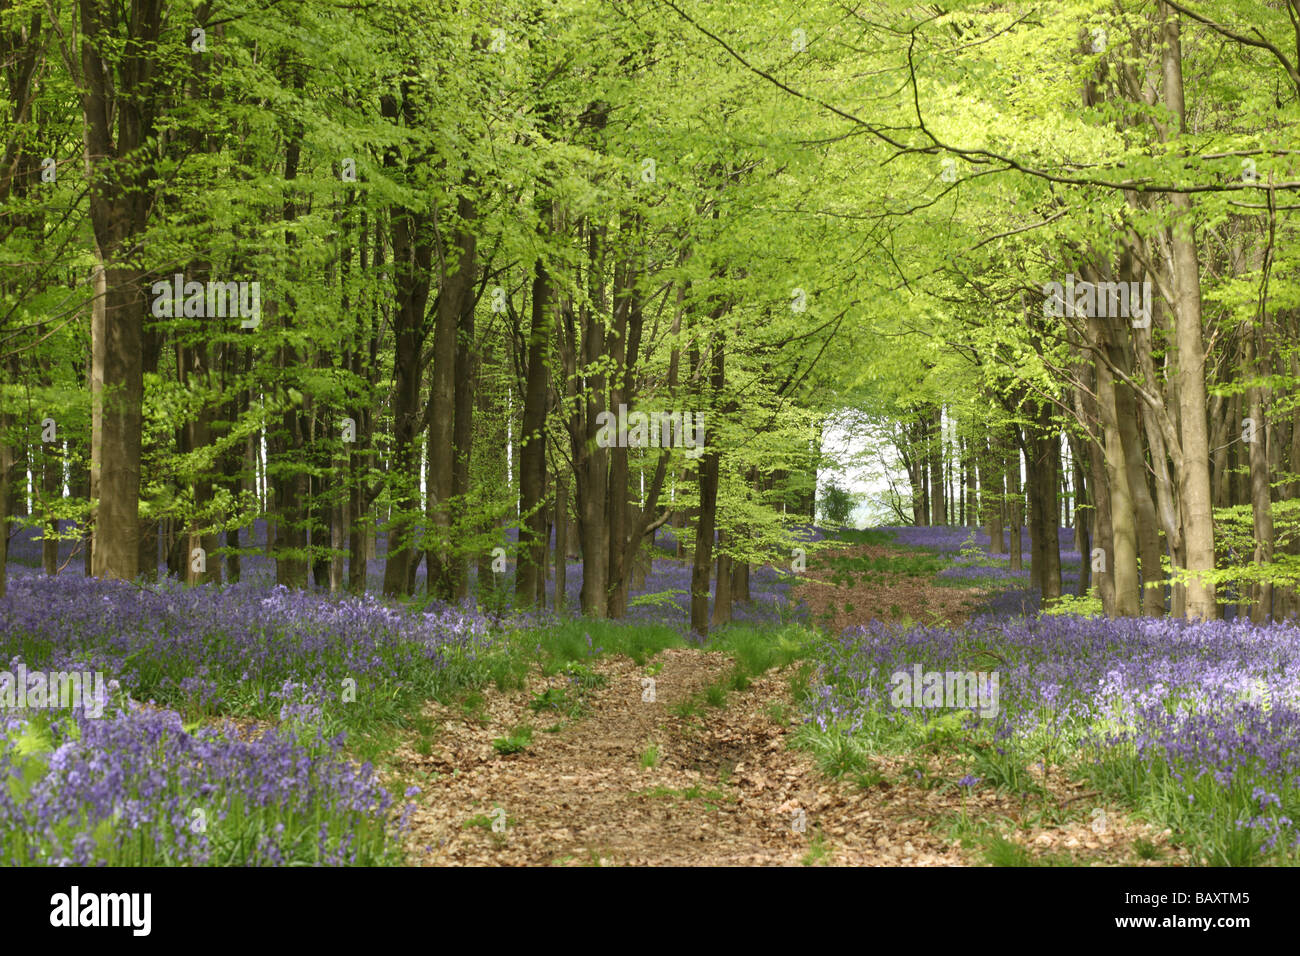 Chemin à travers les cloches - jacinthoides non scripta au printemps, West Woods bluebell Wood, près de Marlborough, Wiltshire, Angleterre, Royaume-Uni Banque D'Images